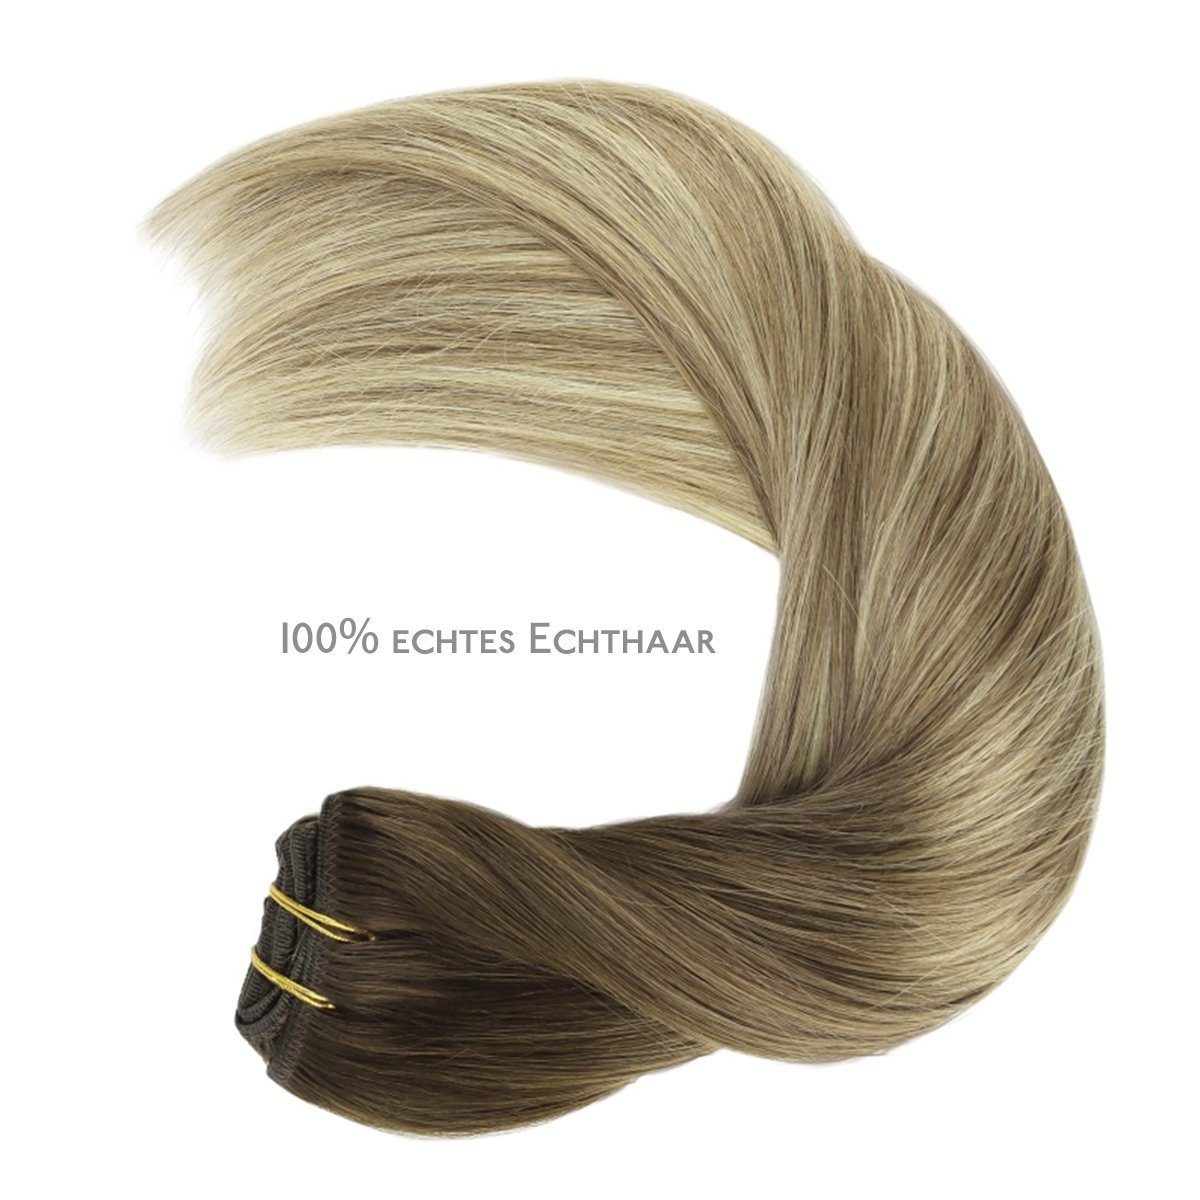 Echthaar-Extension Ash Wennalife Walnuss Clip Bleach und Extensions,Ombré Braun Blonde in Braun bis